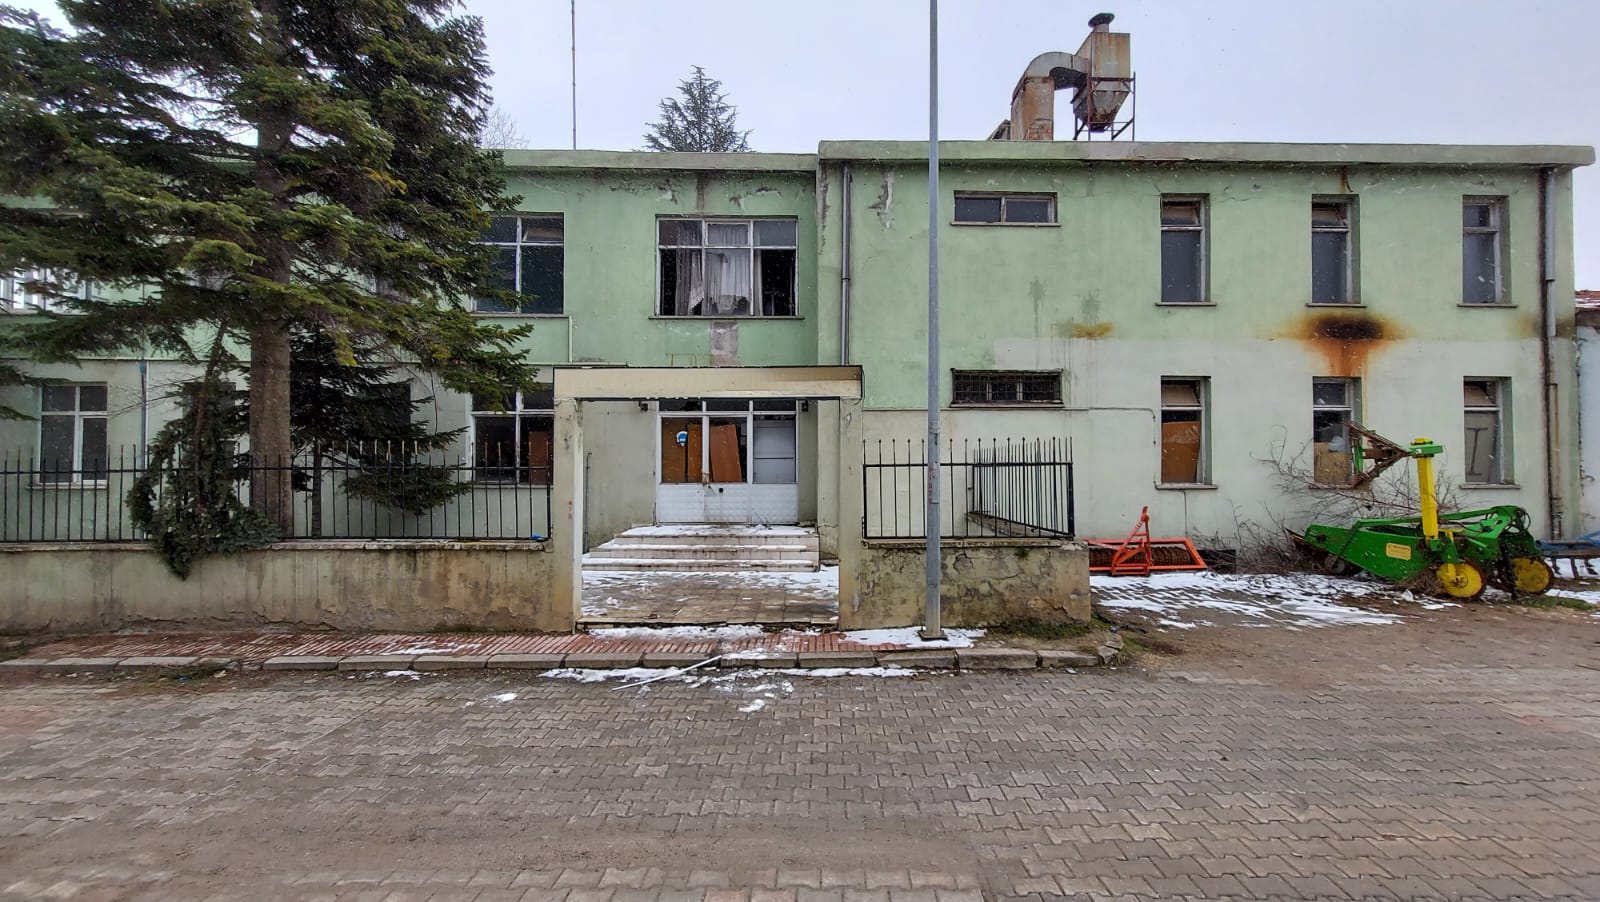 Amasya’da eski kamu binasından hırsızlık iddiasıyla 2 zanlı yakalandı